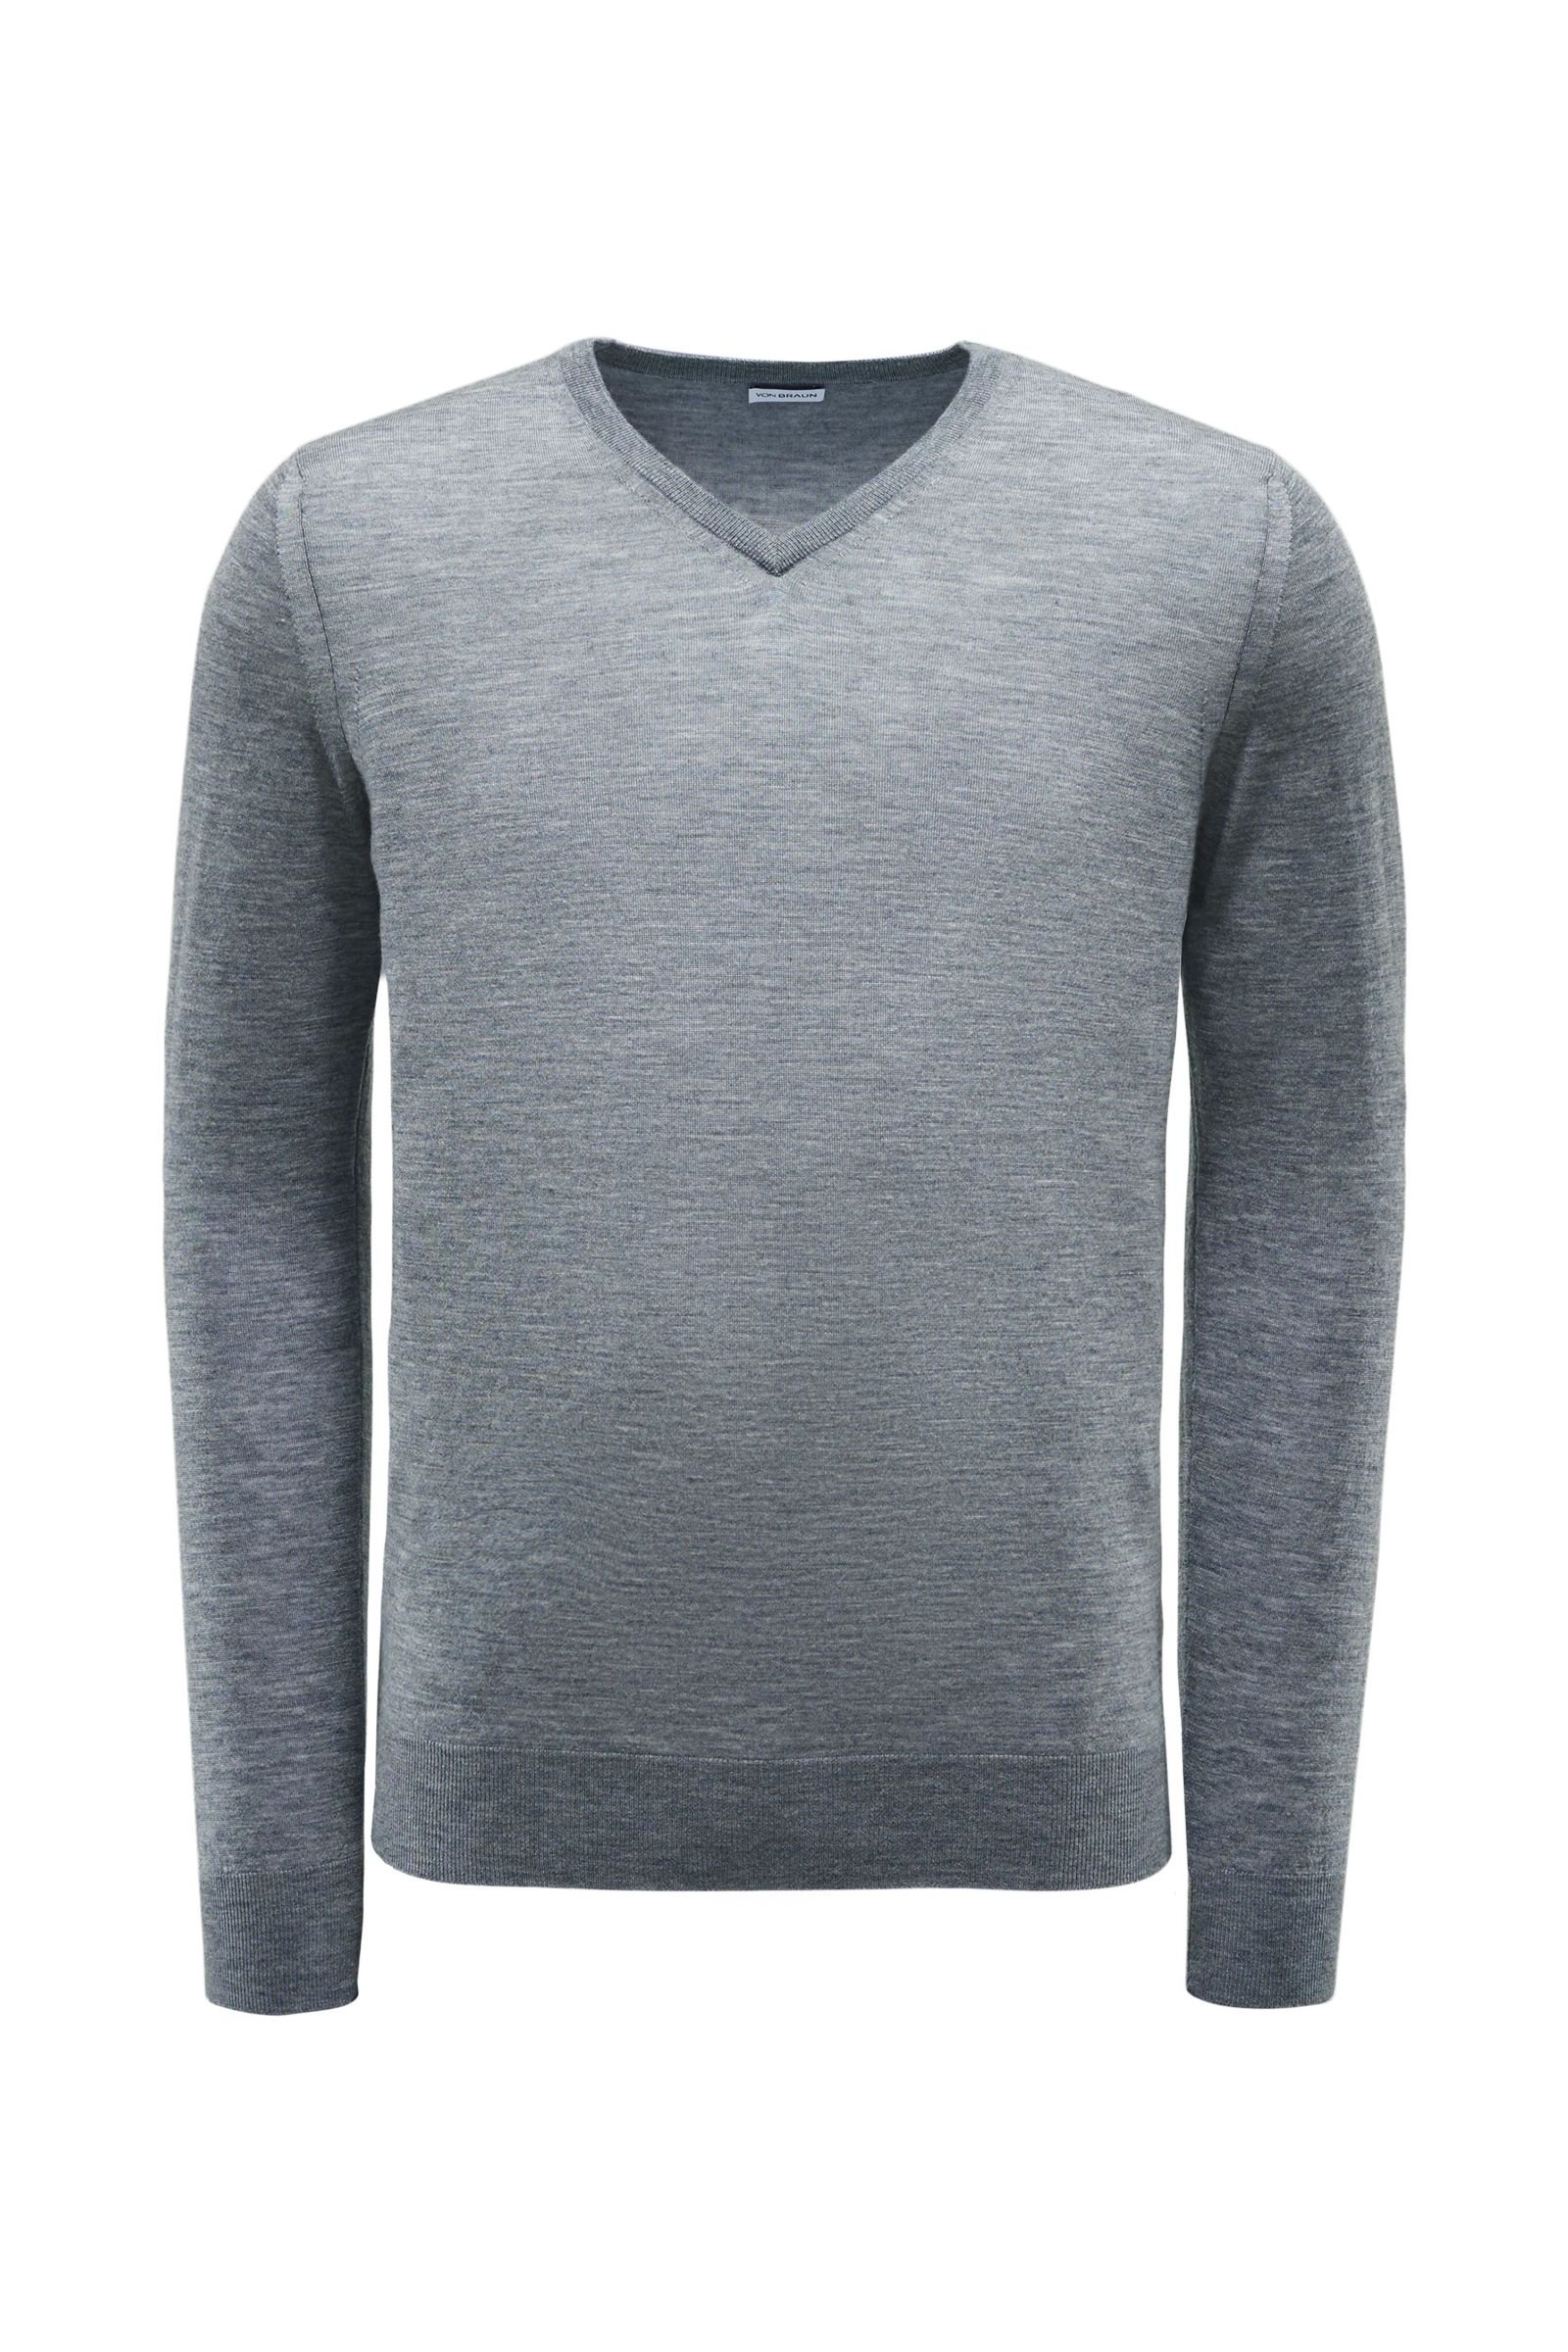 Merino V-neck jumper grey